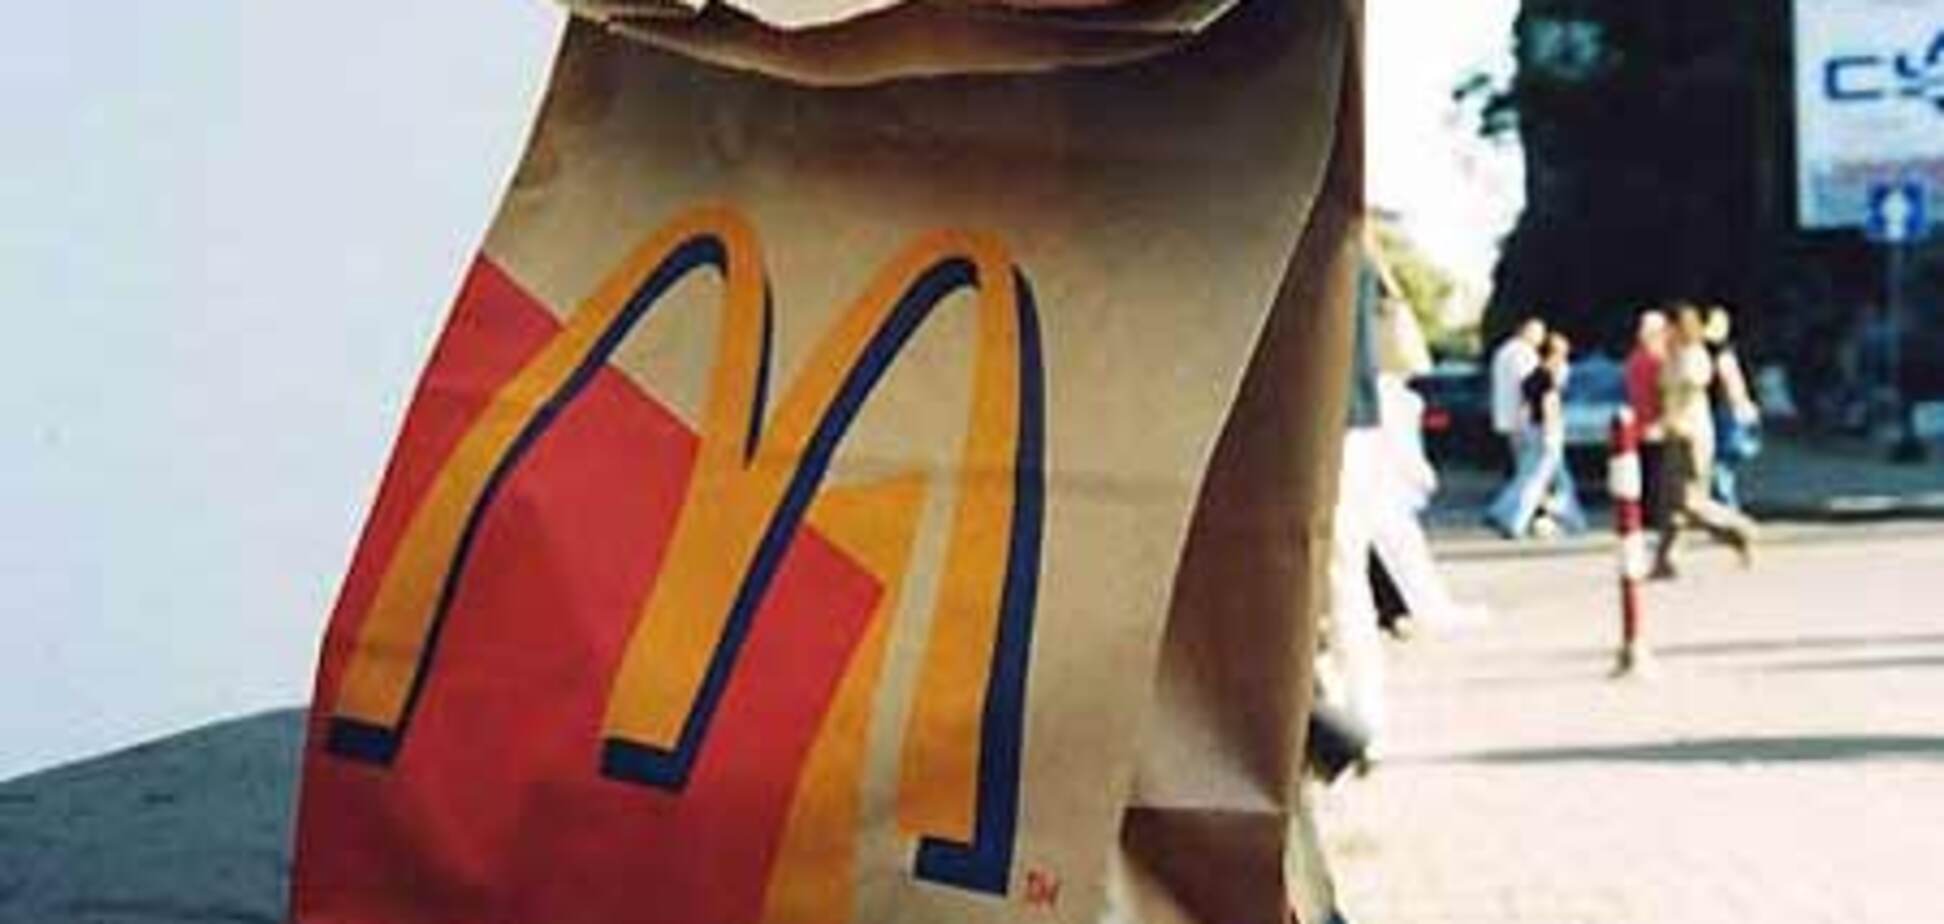 Ветеран-инвалид подал в суд на McDonald's